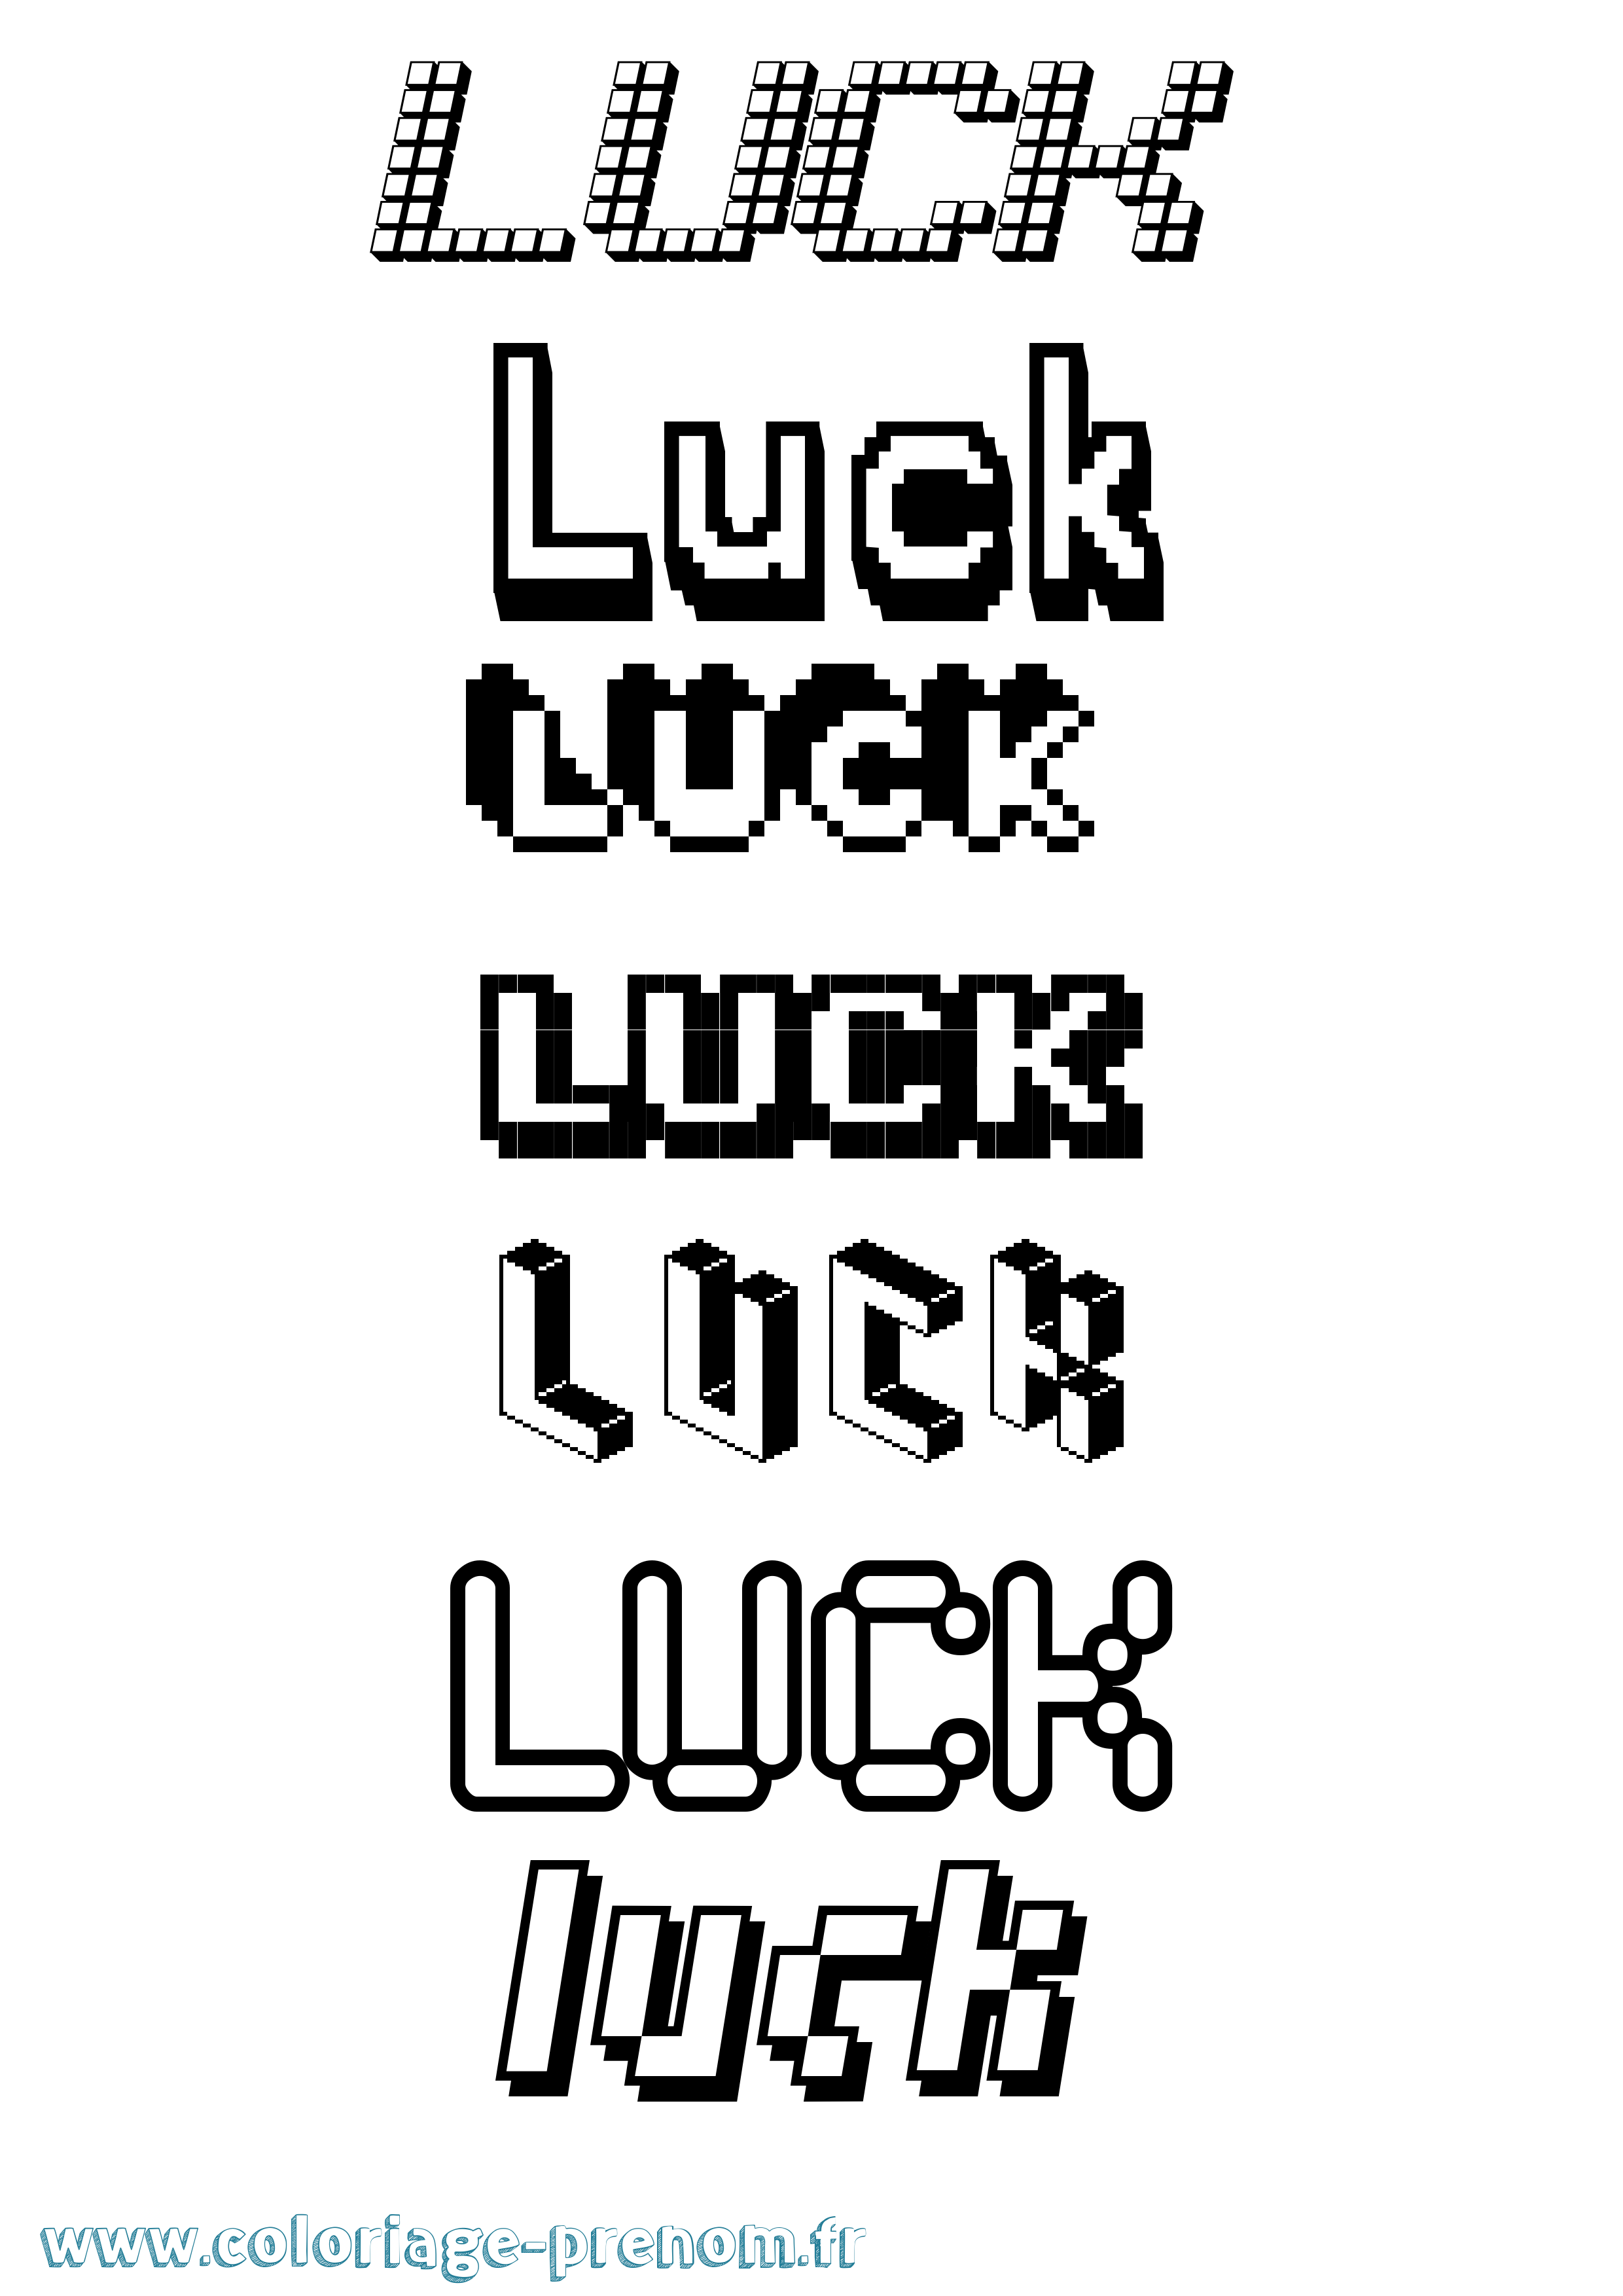 Coloriage prénom Luck Pixel